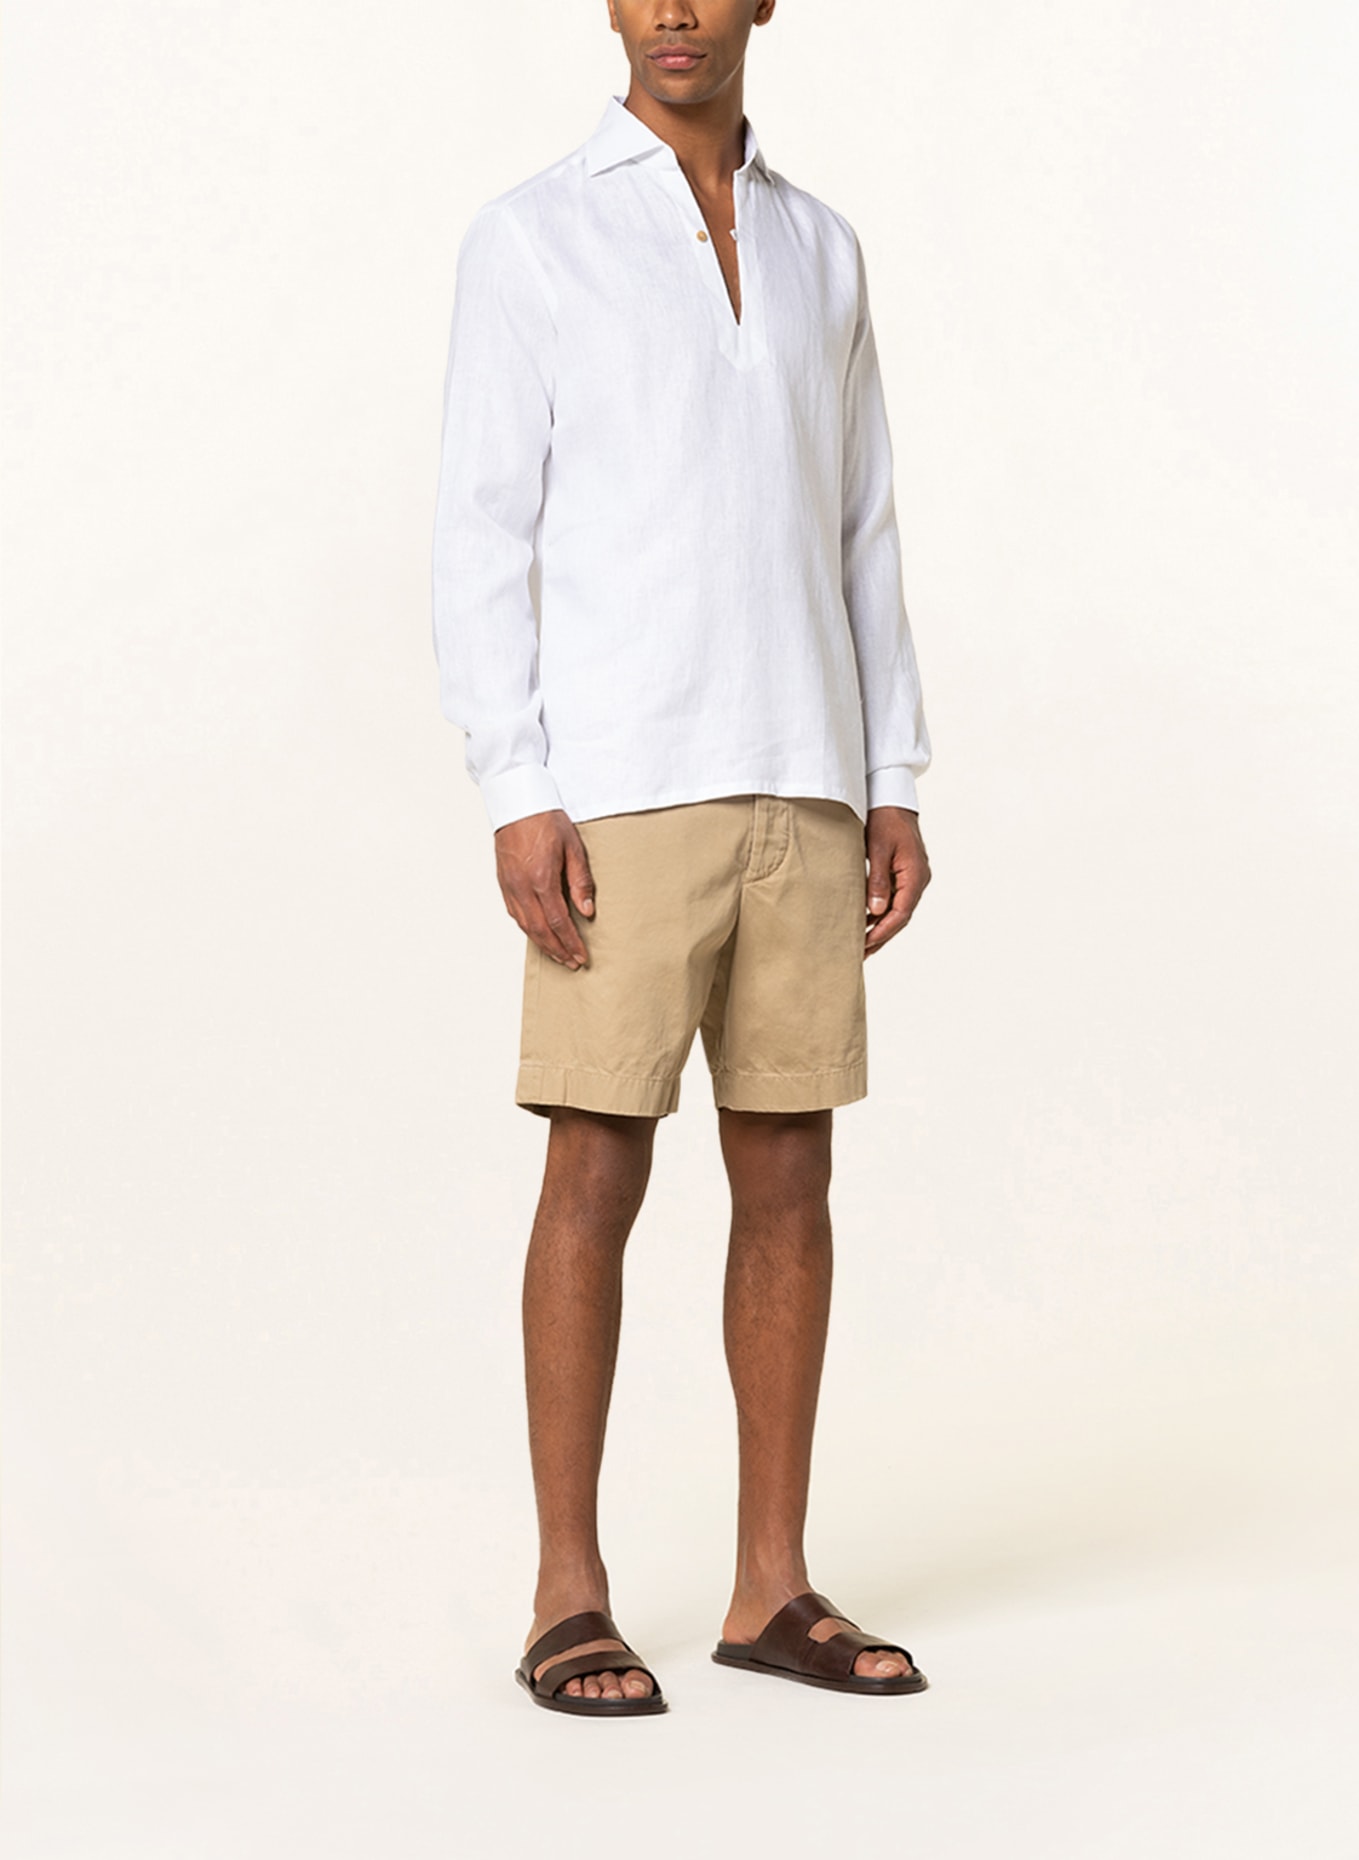 RIPA RIPA Linen shirt regular fit, Color: WHITE (Image 2)